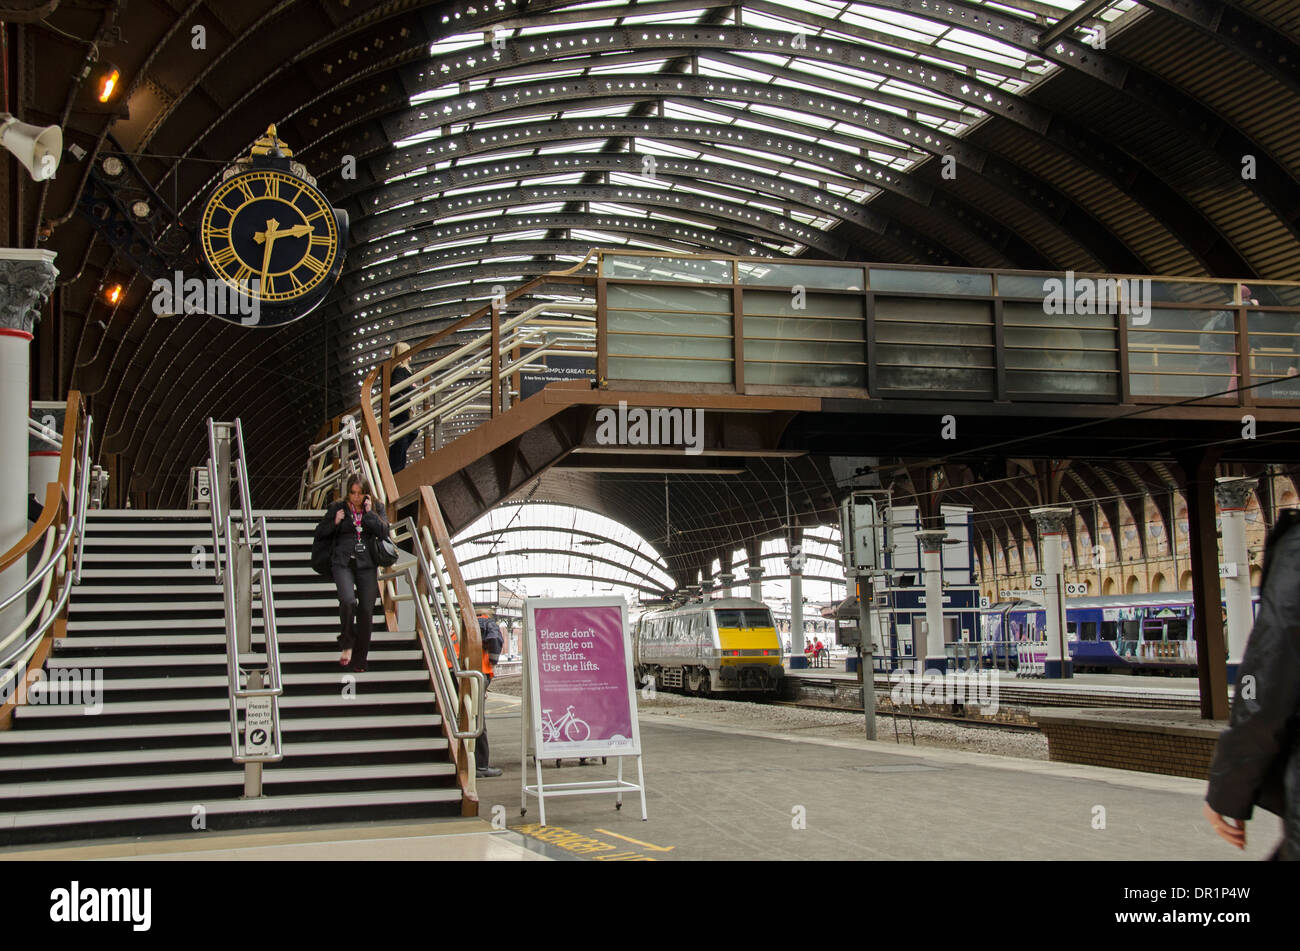 Interno del trainshed con ferro e il tetto in vetro fisso, treni & donna a piedi dalla piattaforma orologio - La stazione ferroviaria di York, North Yorkshire, Inghilterra, Regno Unito Foto Stock